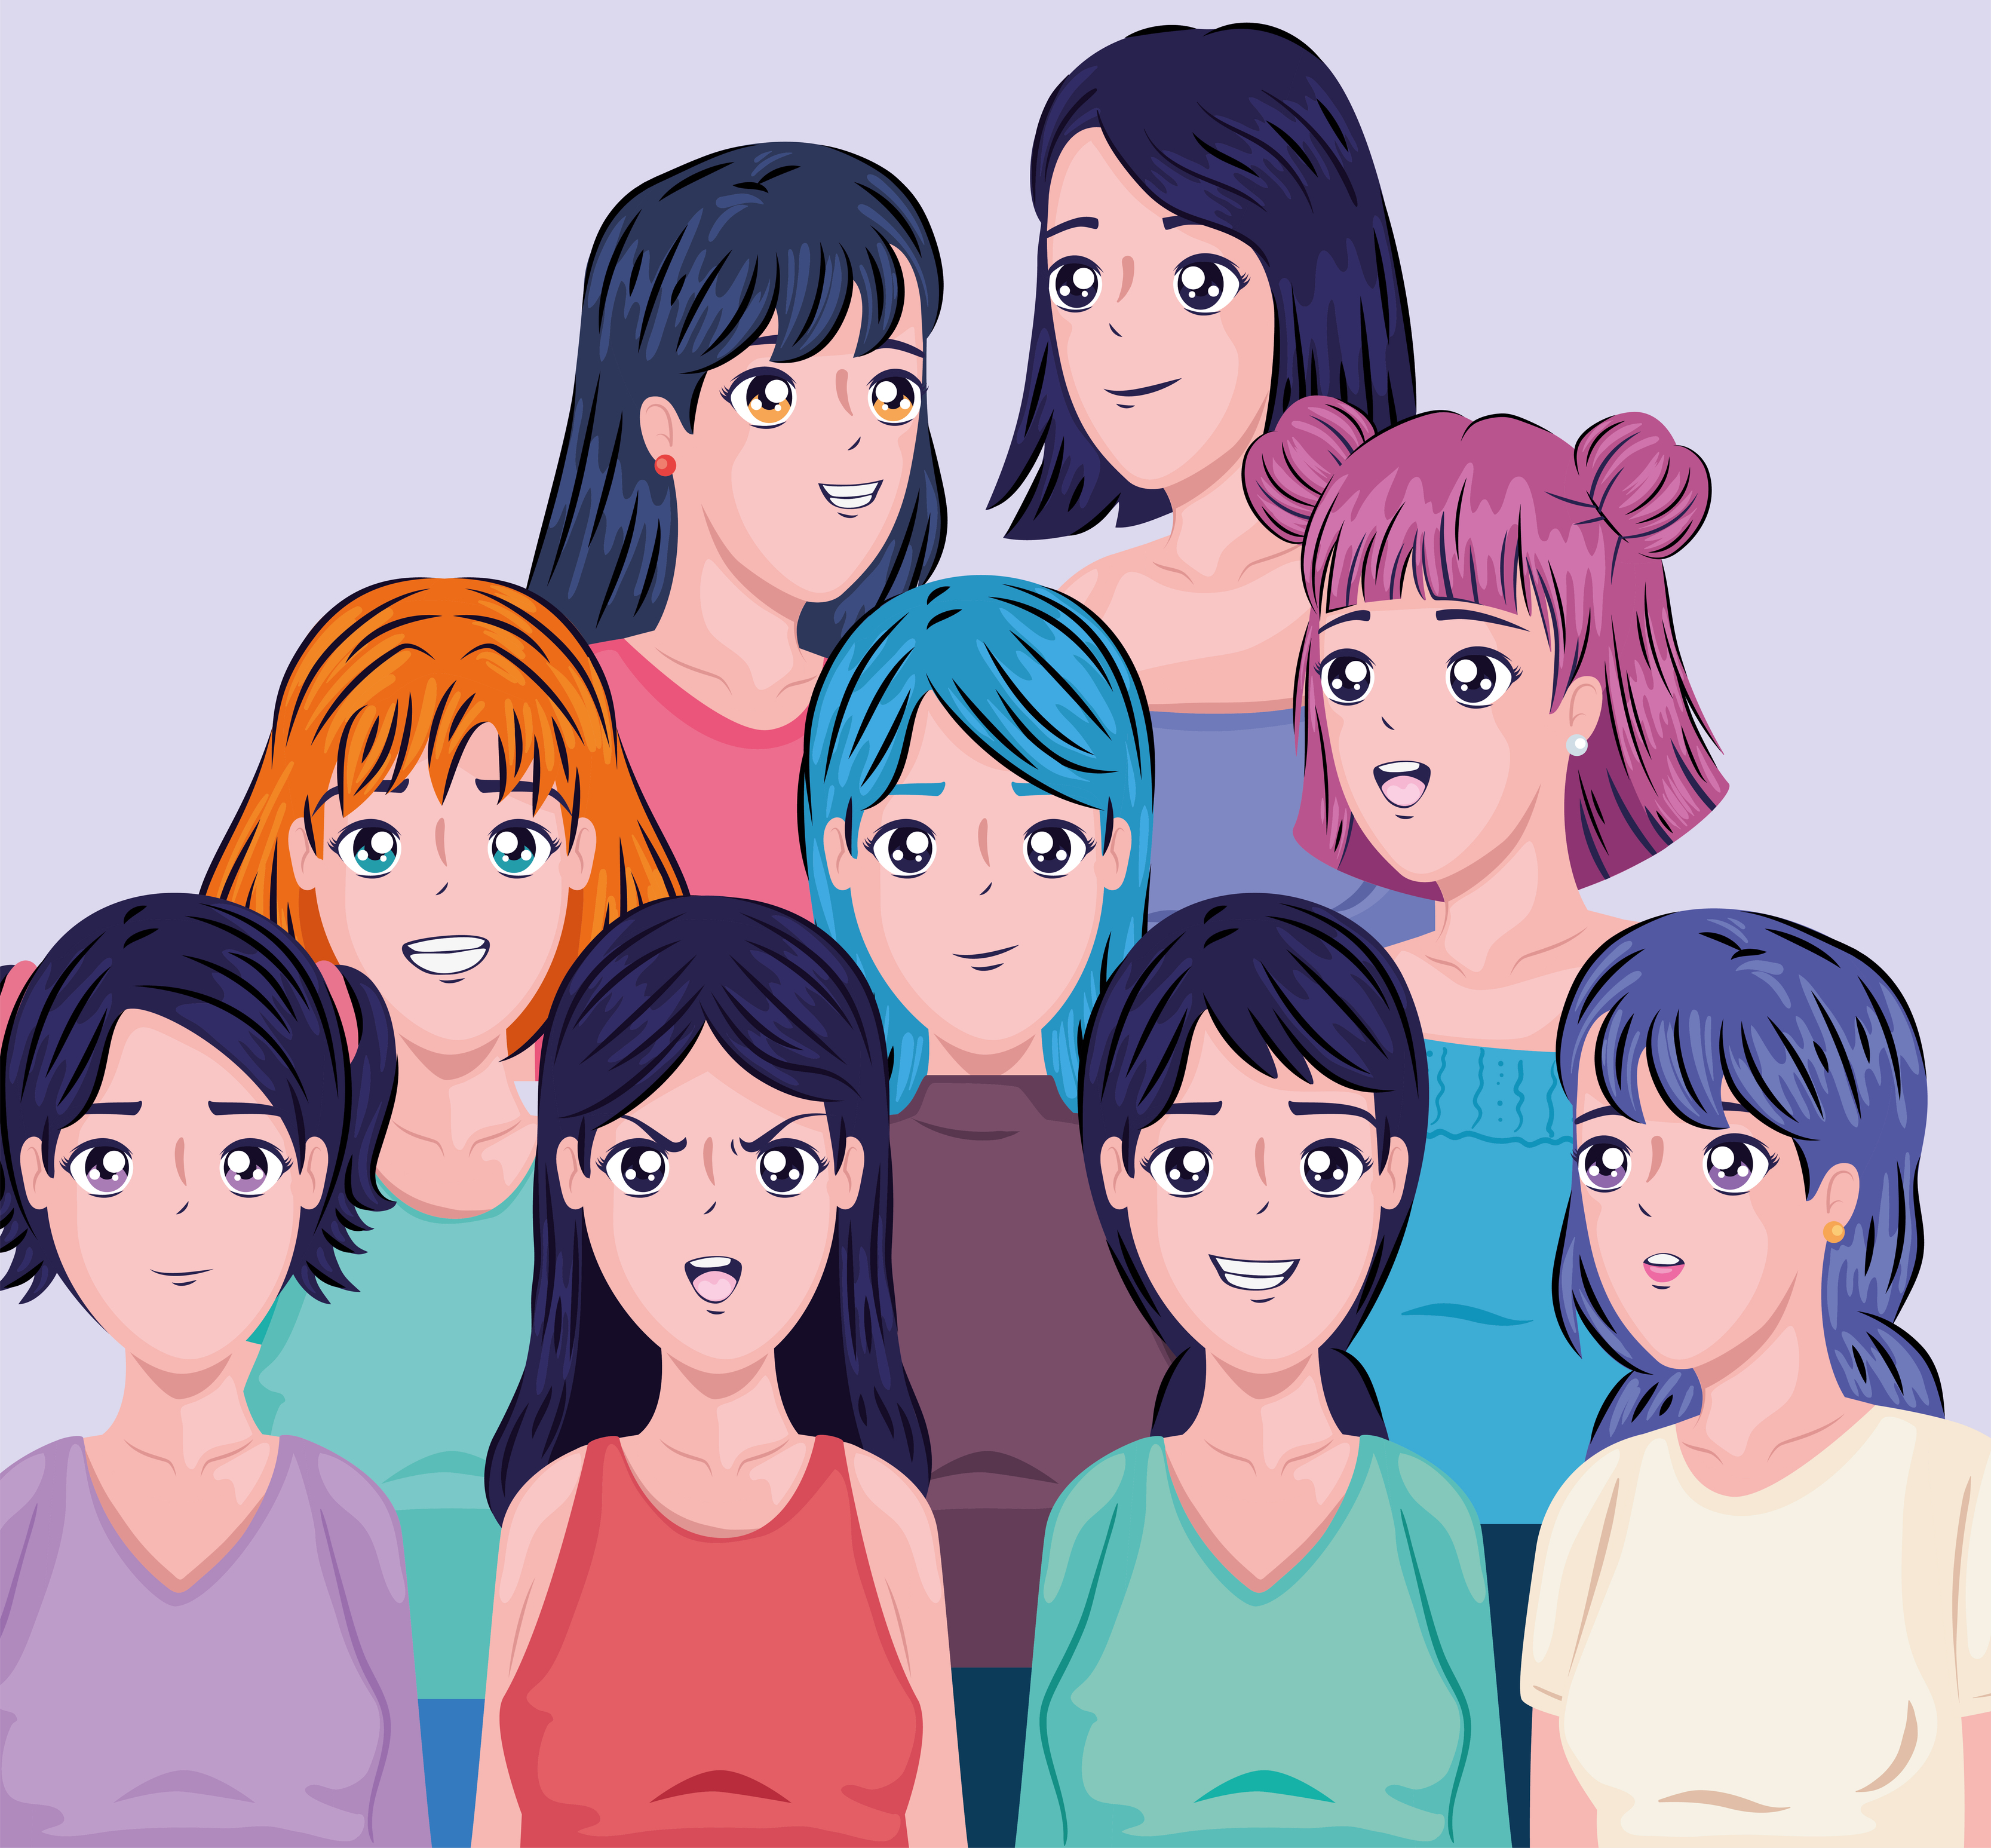 mulheres de anime em poses diferentes 6197118 Vetor no Vecteezy